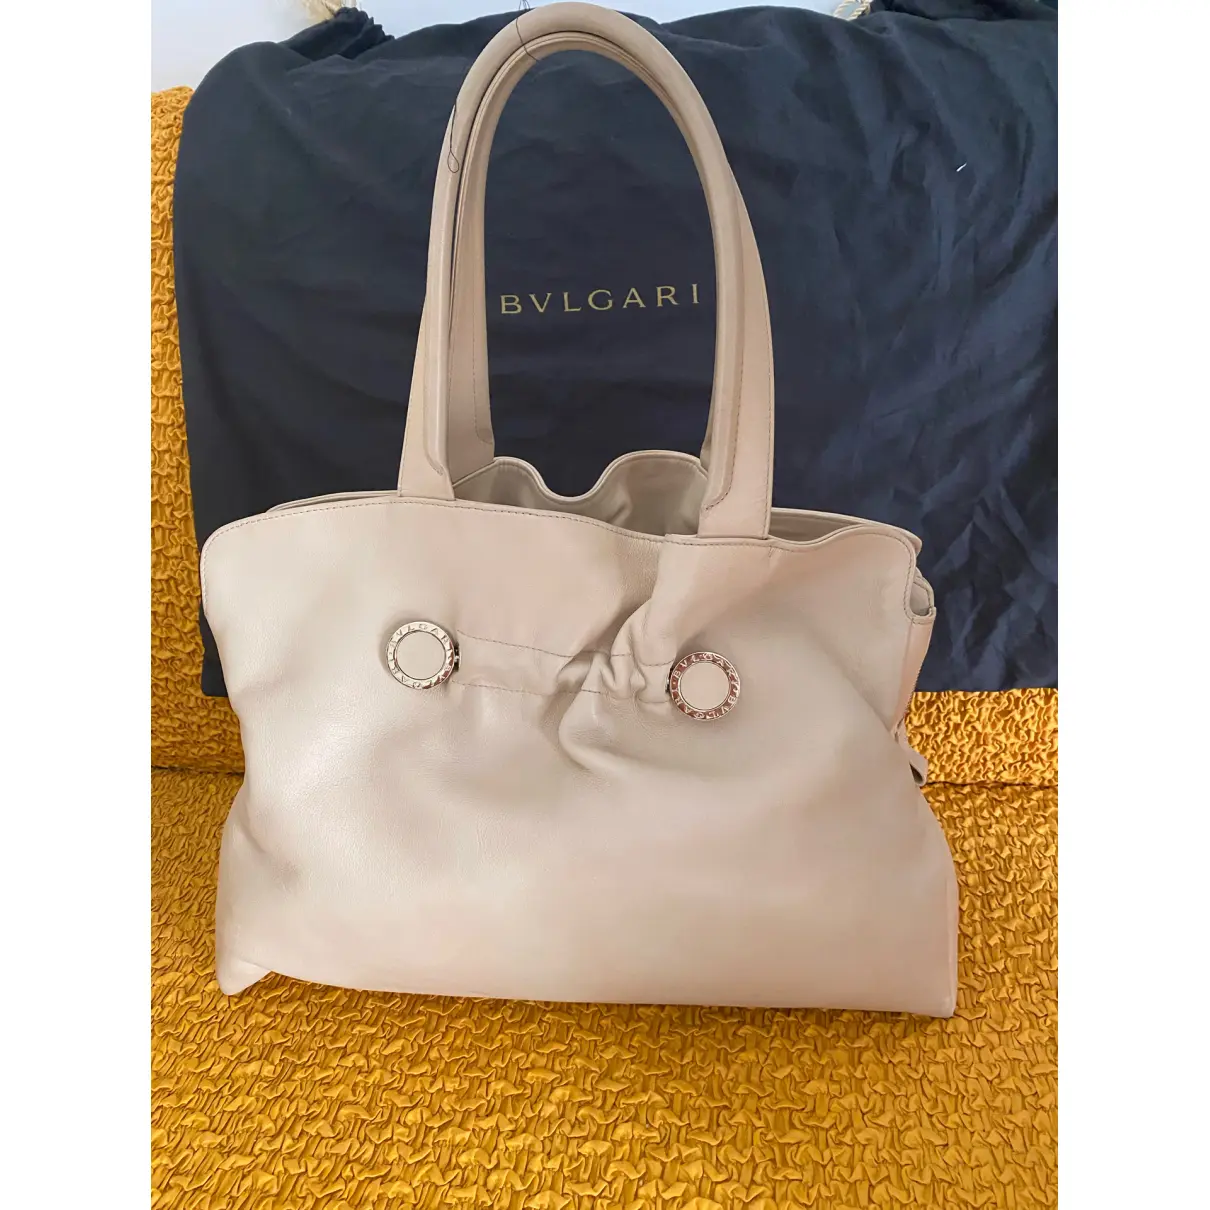 Buy Bvlgari Bulgari leather handbag online